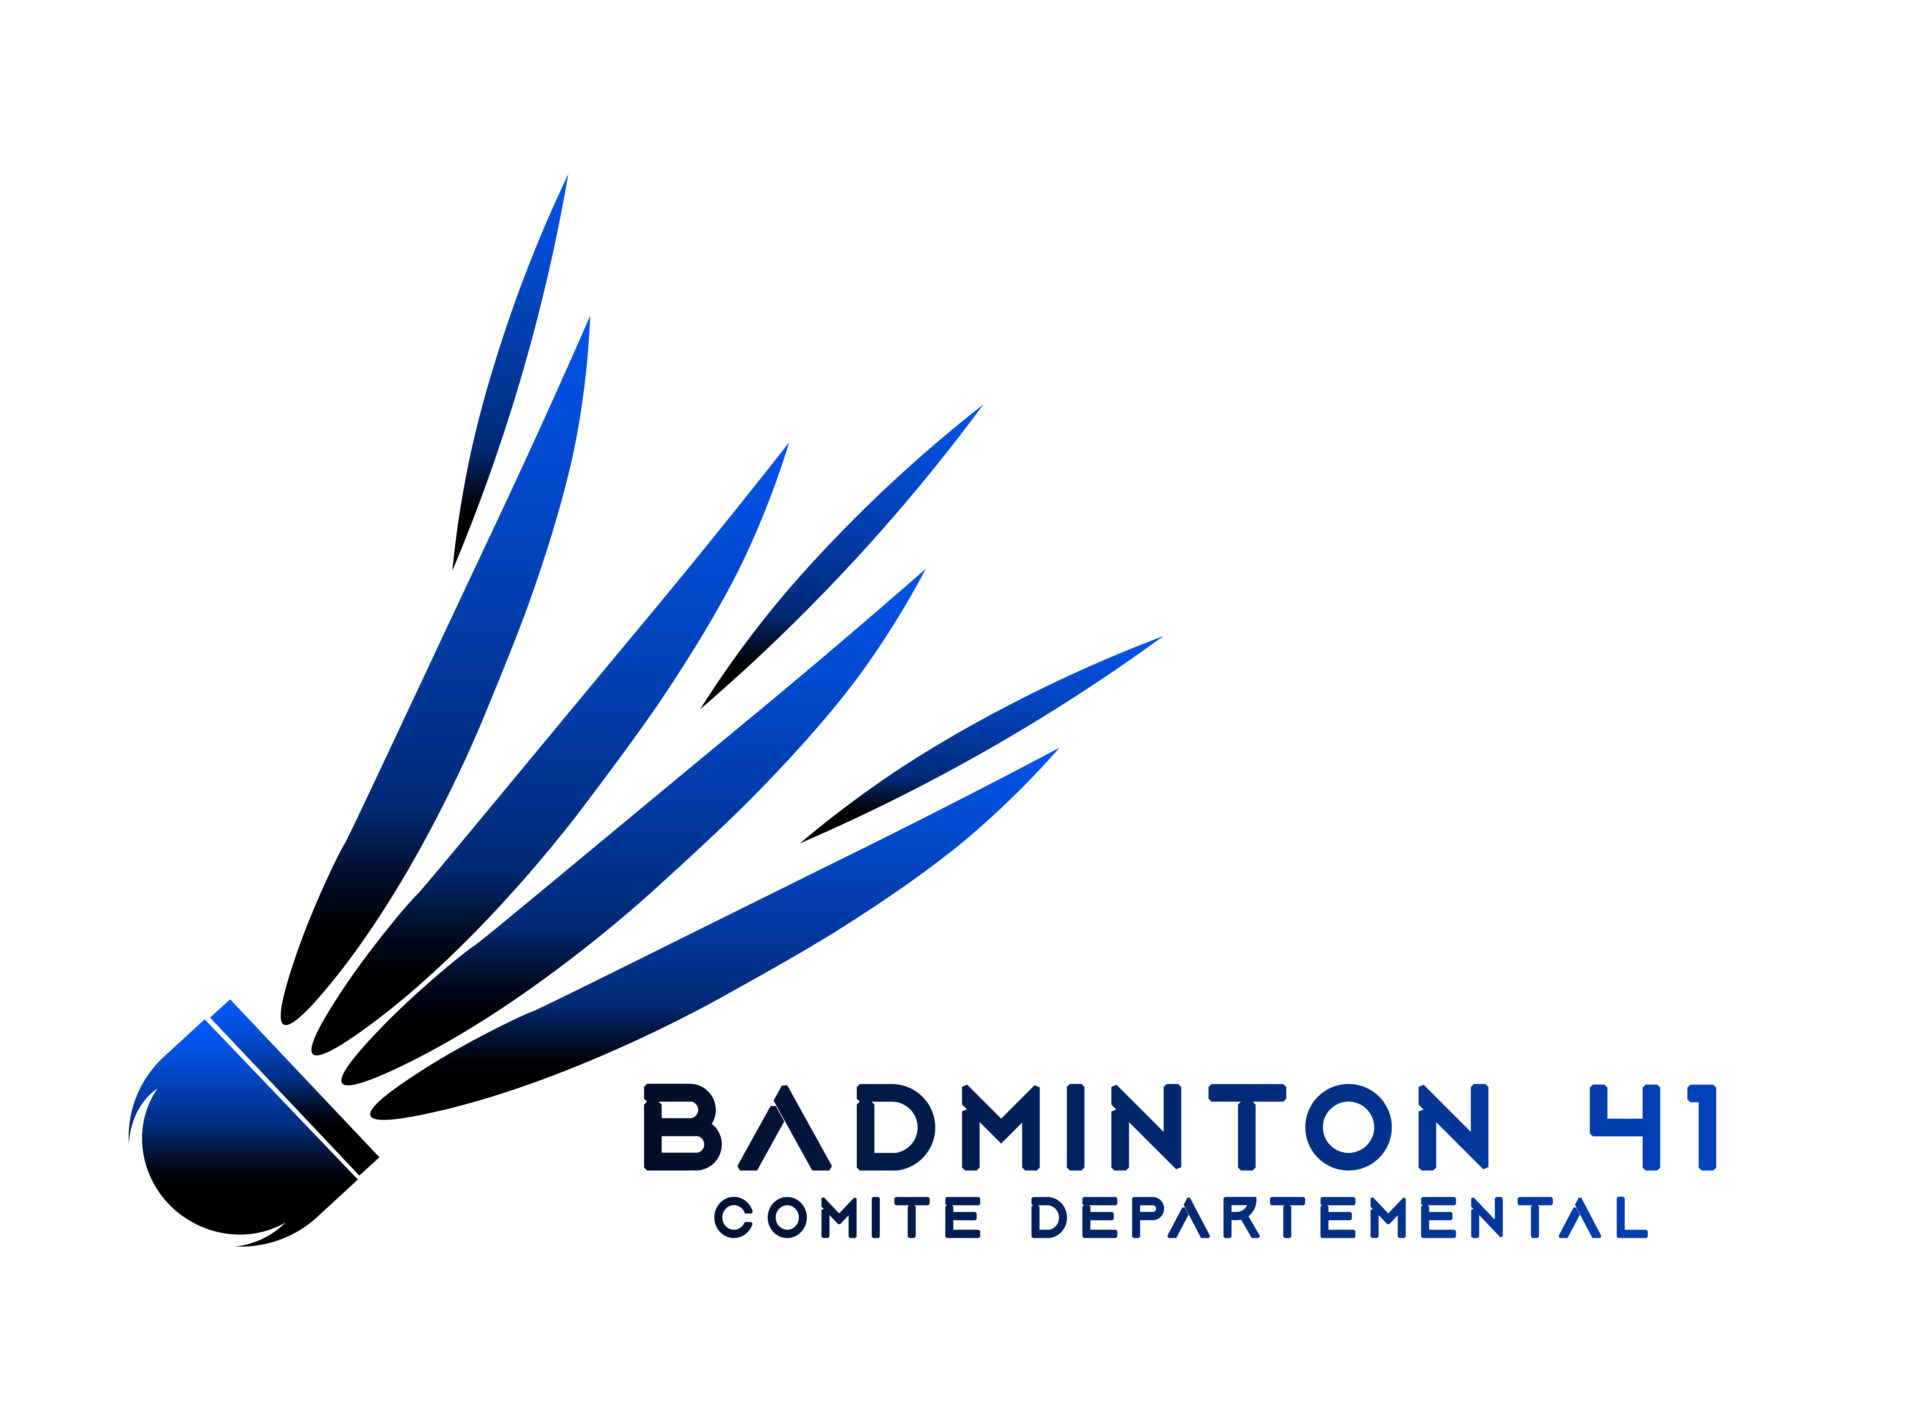 logo du comité départemental de badminton du 41